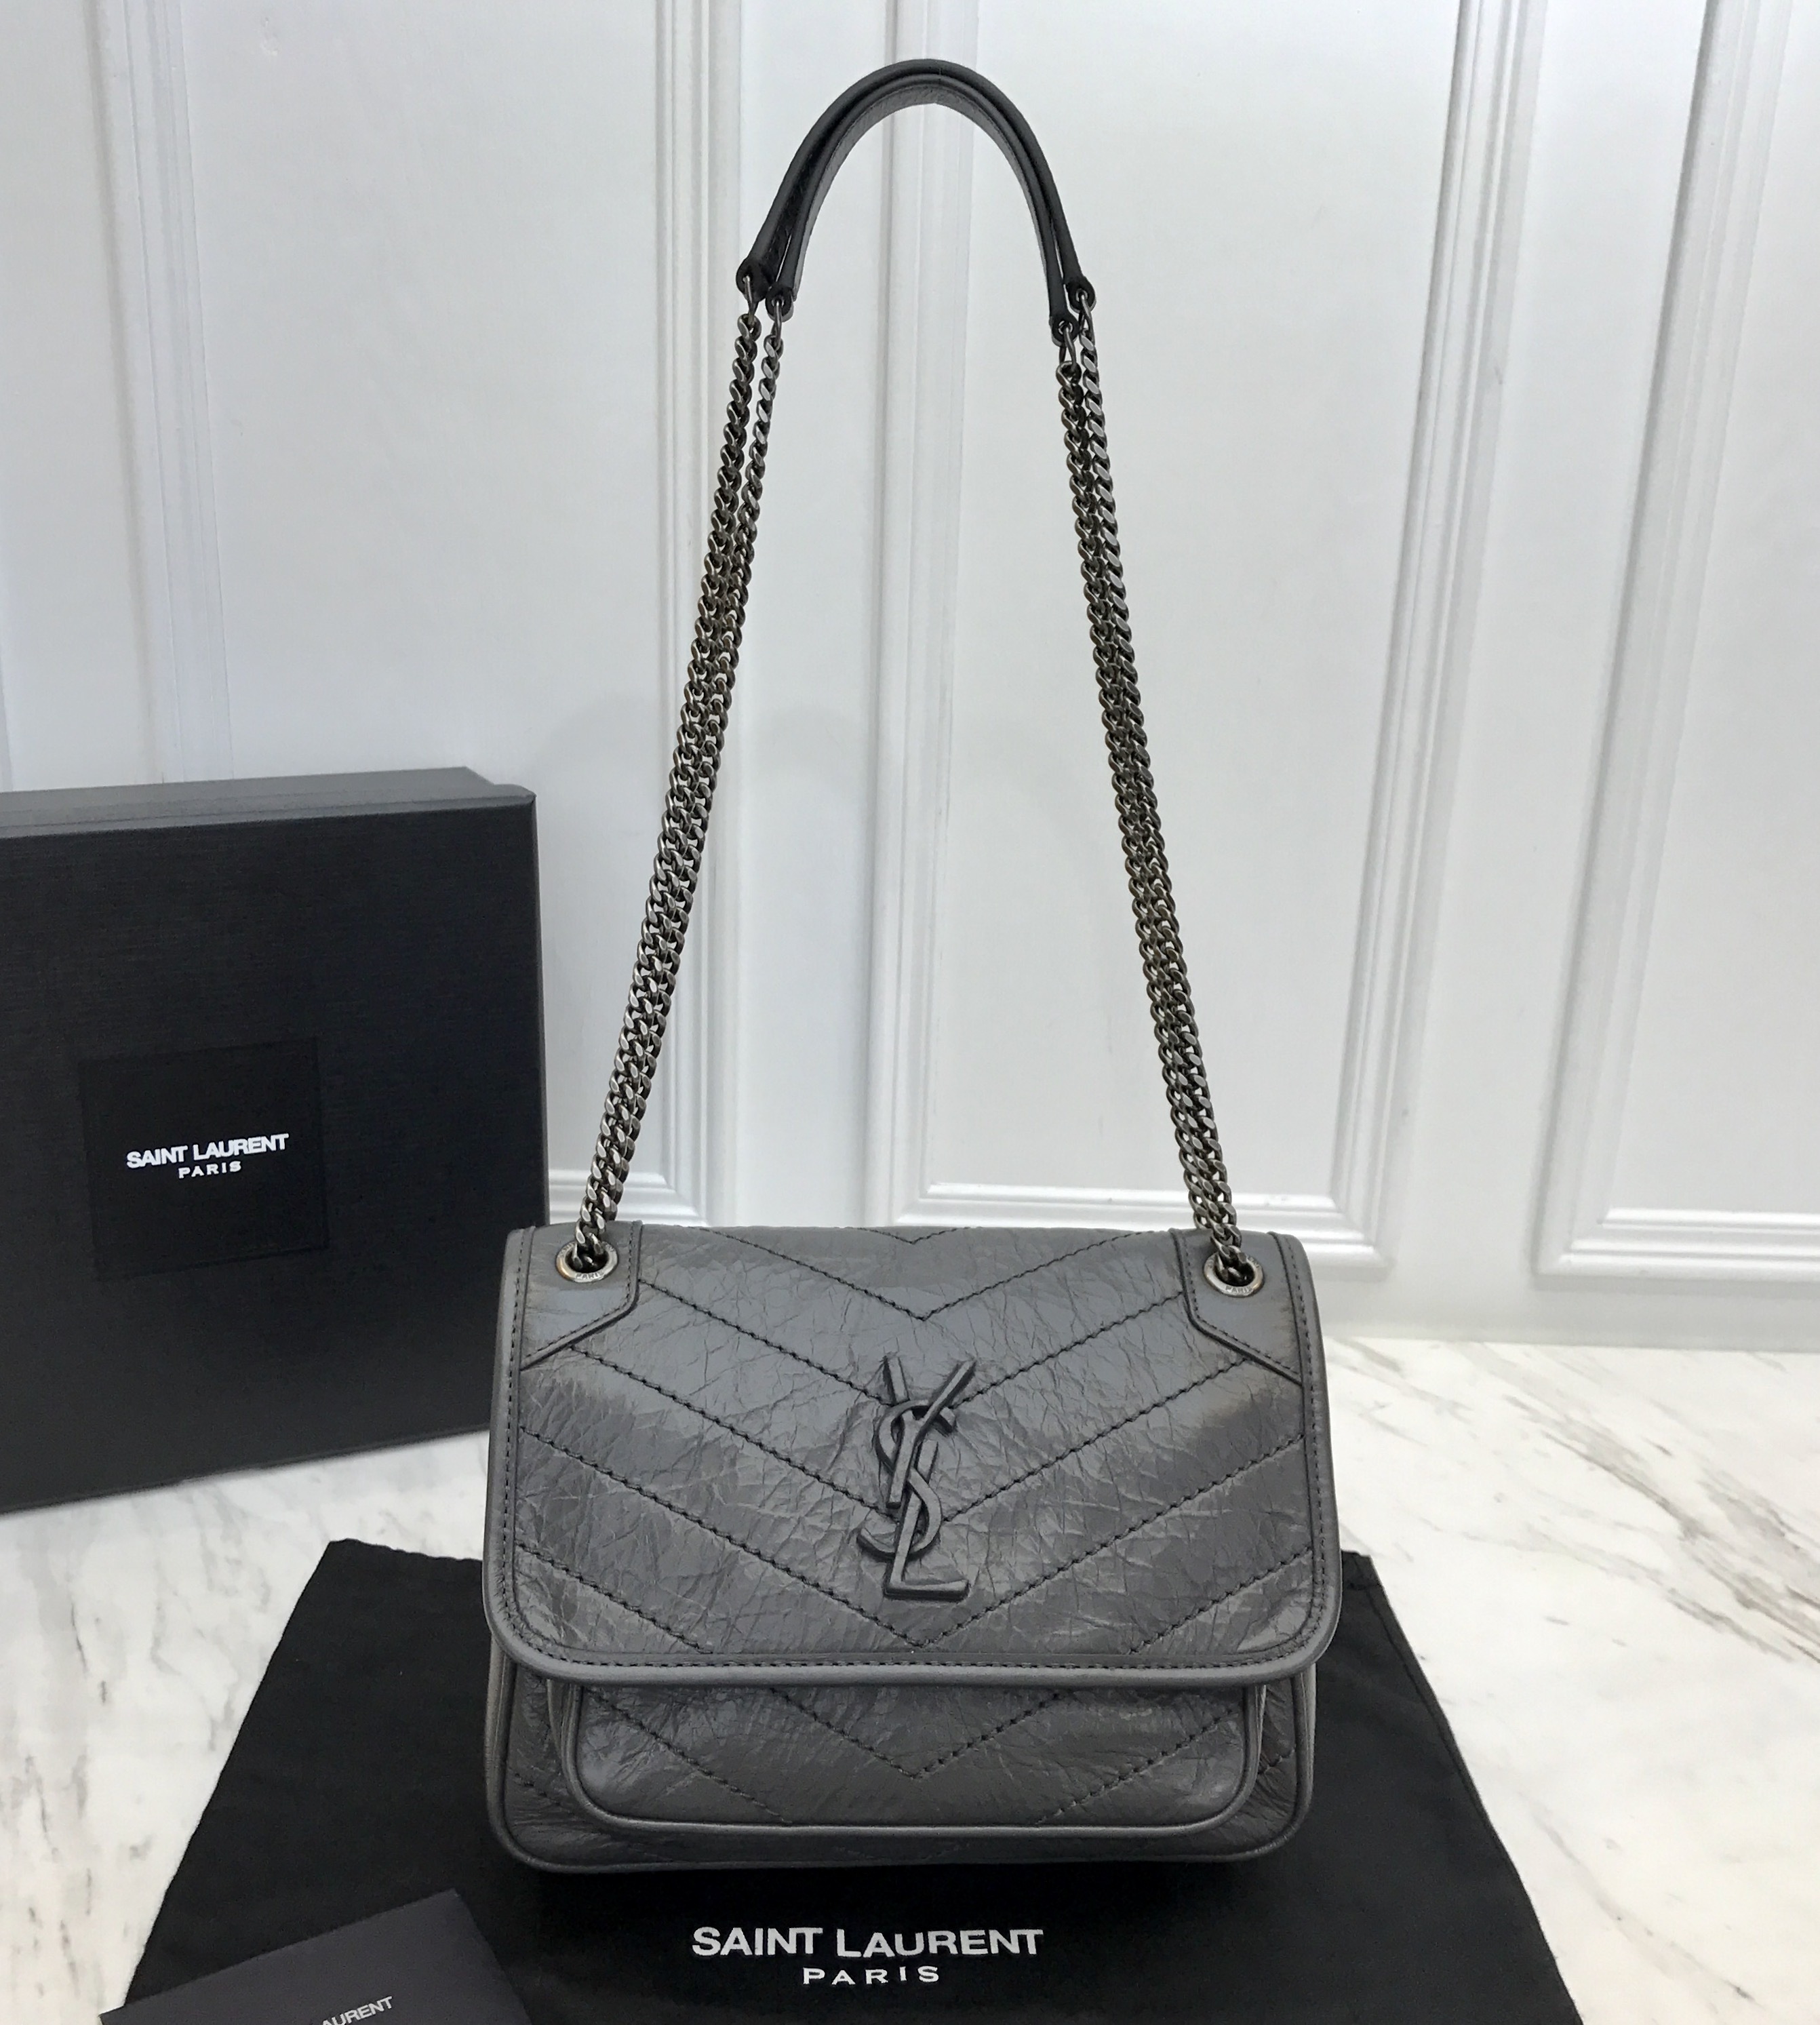 Yves Saint Laurent Handbags Outlet NAR Media Kit